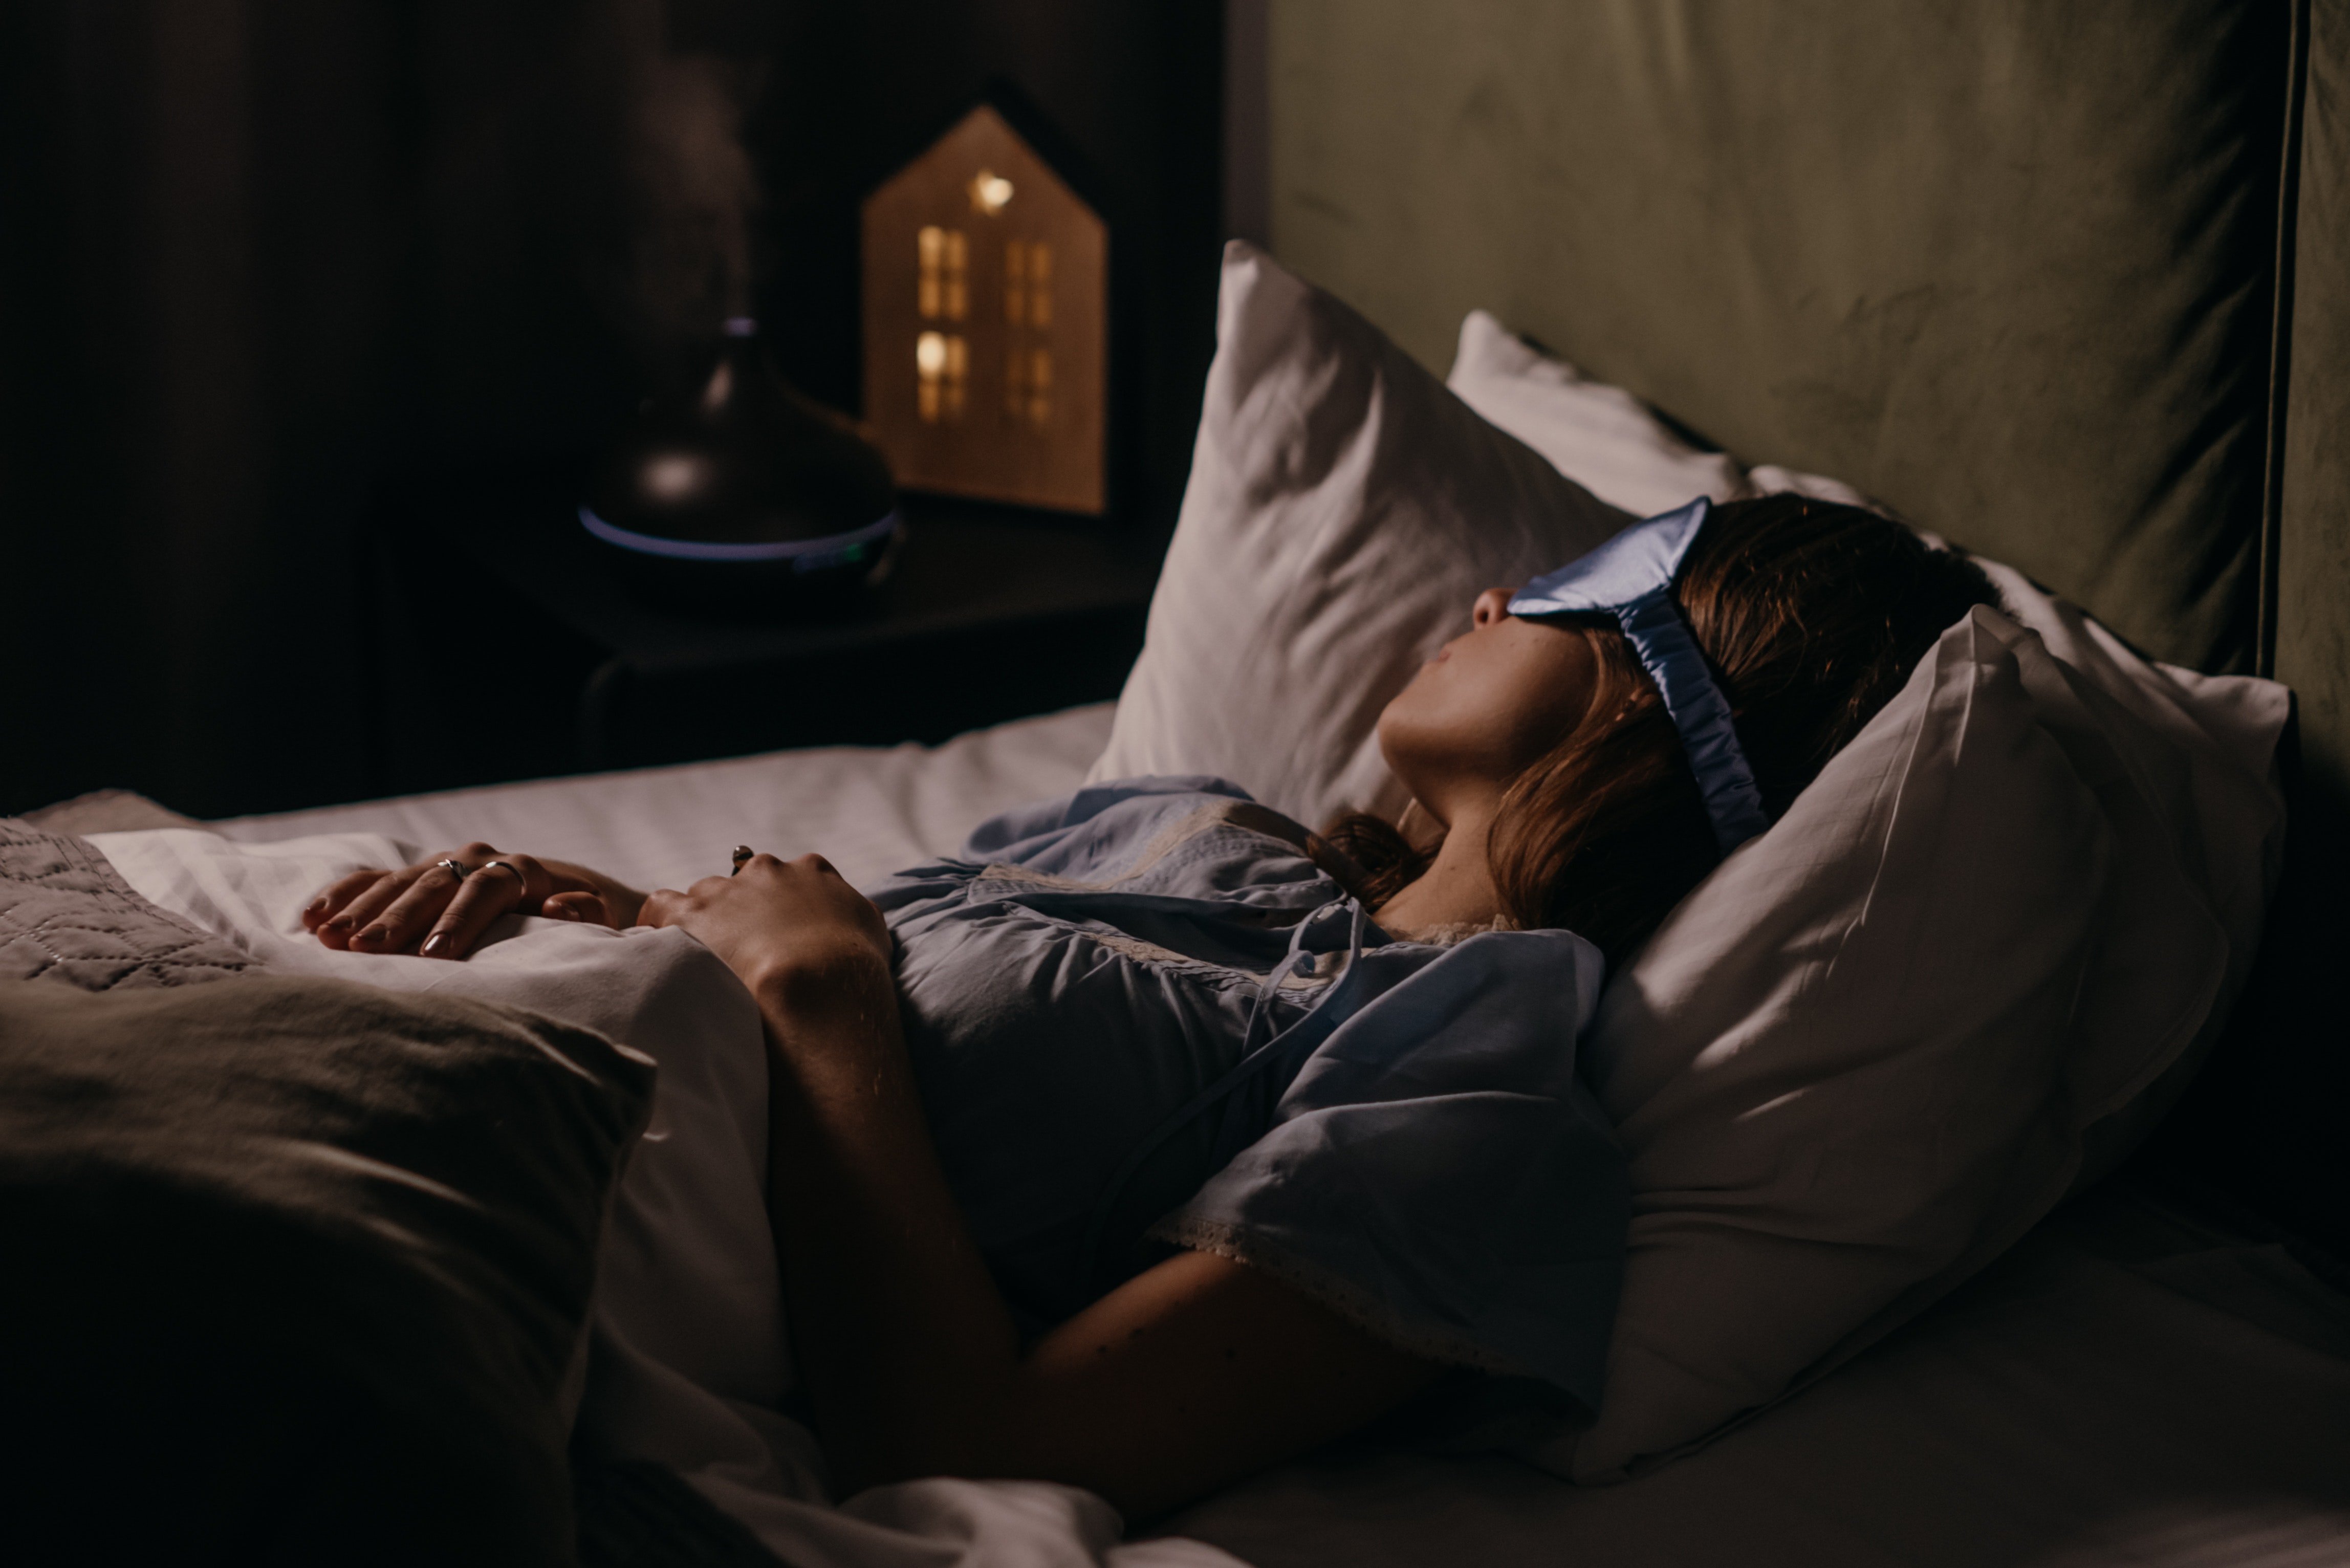 Die Frau steckte ihr Babyphone unter das Kopfkissen und schlief ein | Quelle: Pexel